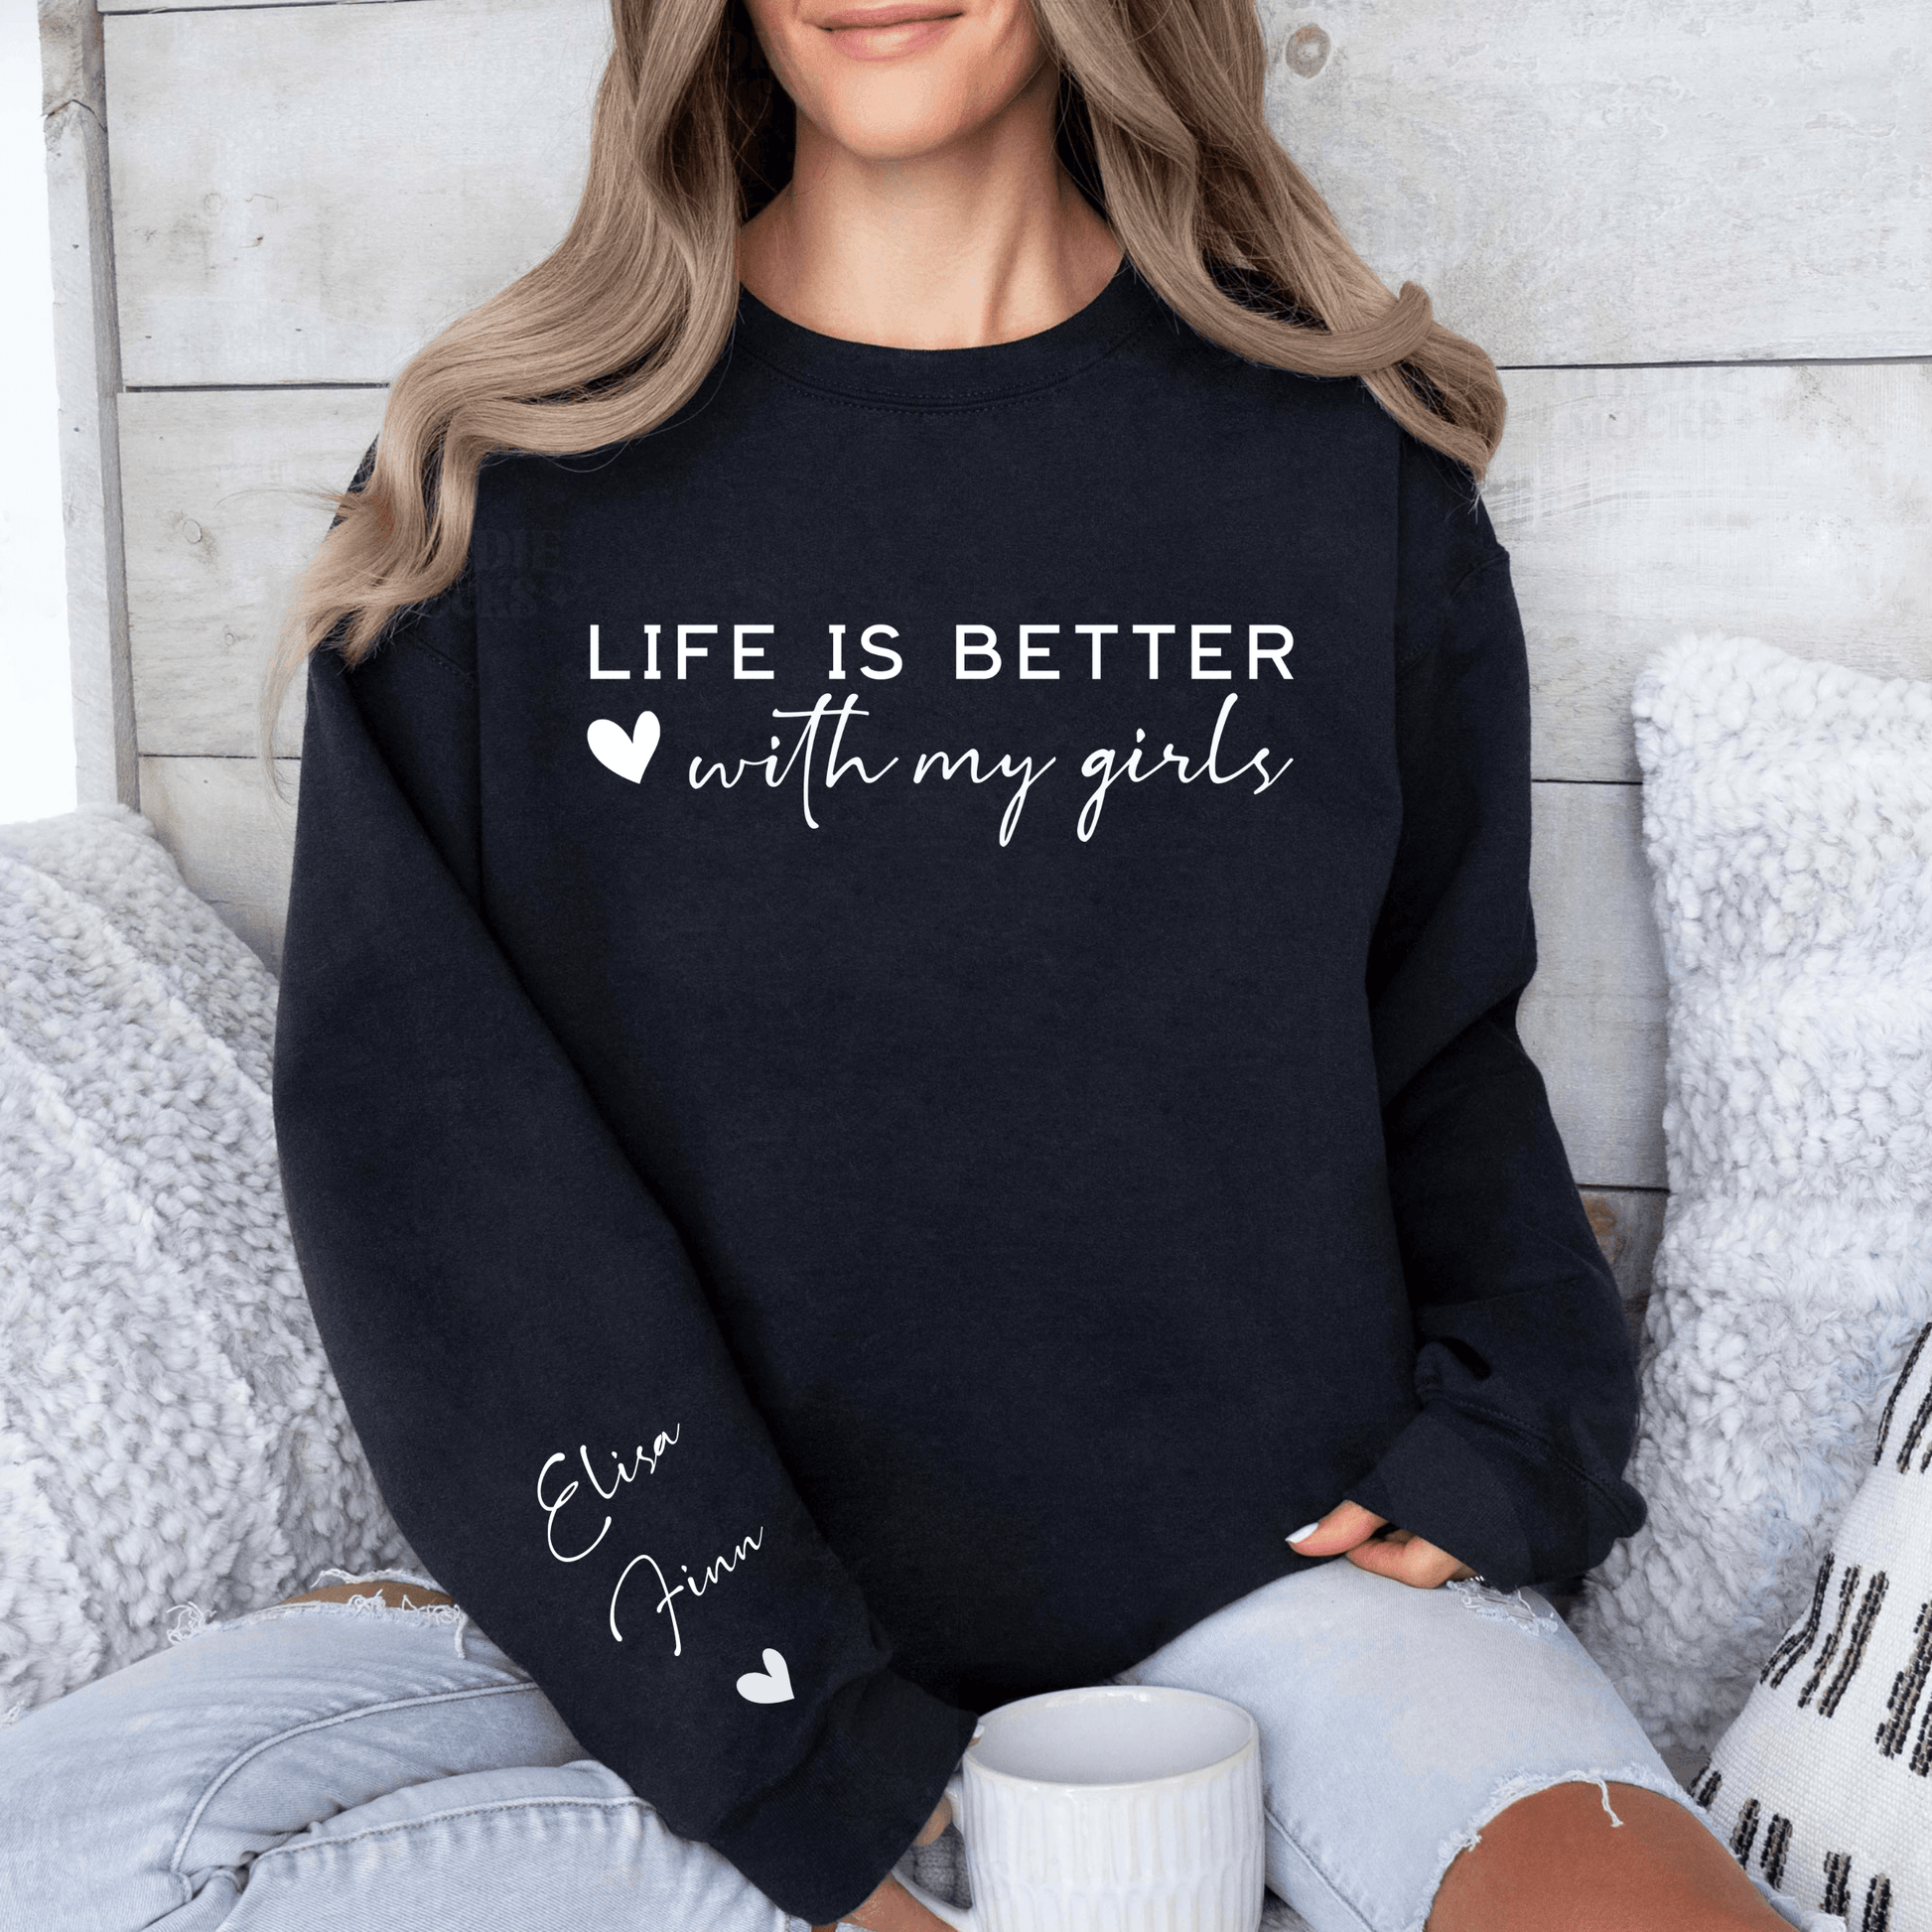 "Das Leben ist schöner mit meinen Mädchen" Personalisiertes Sweatshirt - GiftHaus